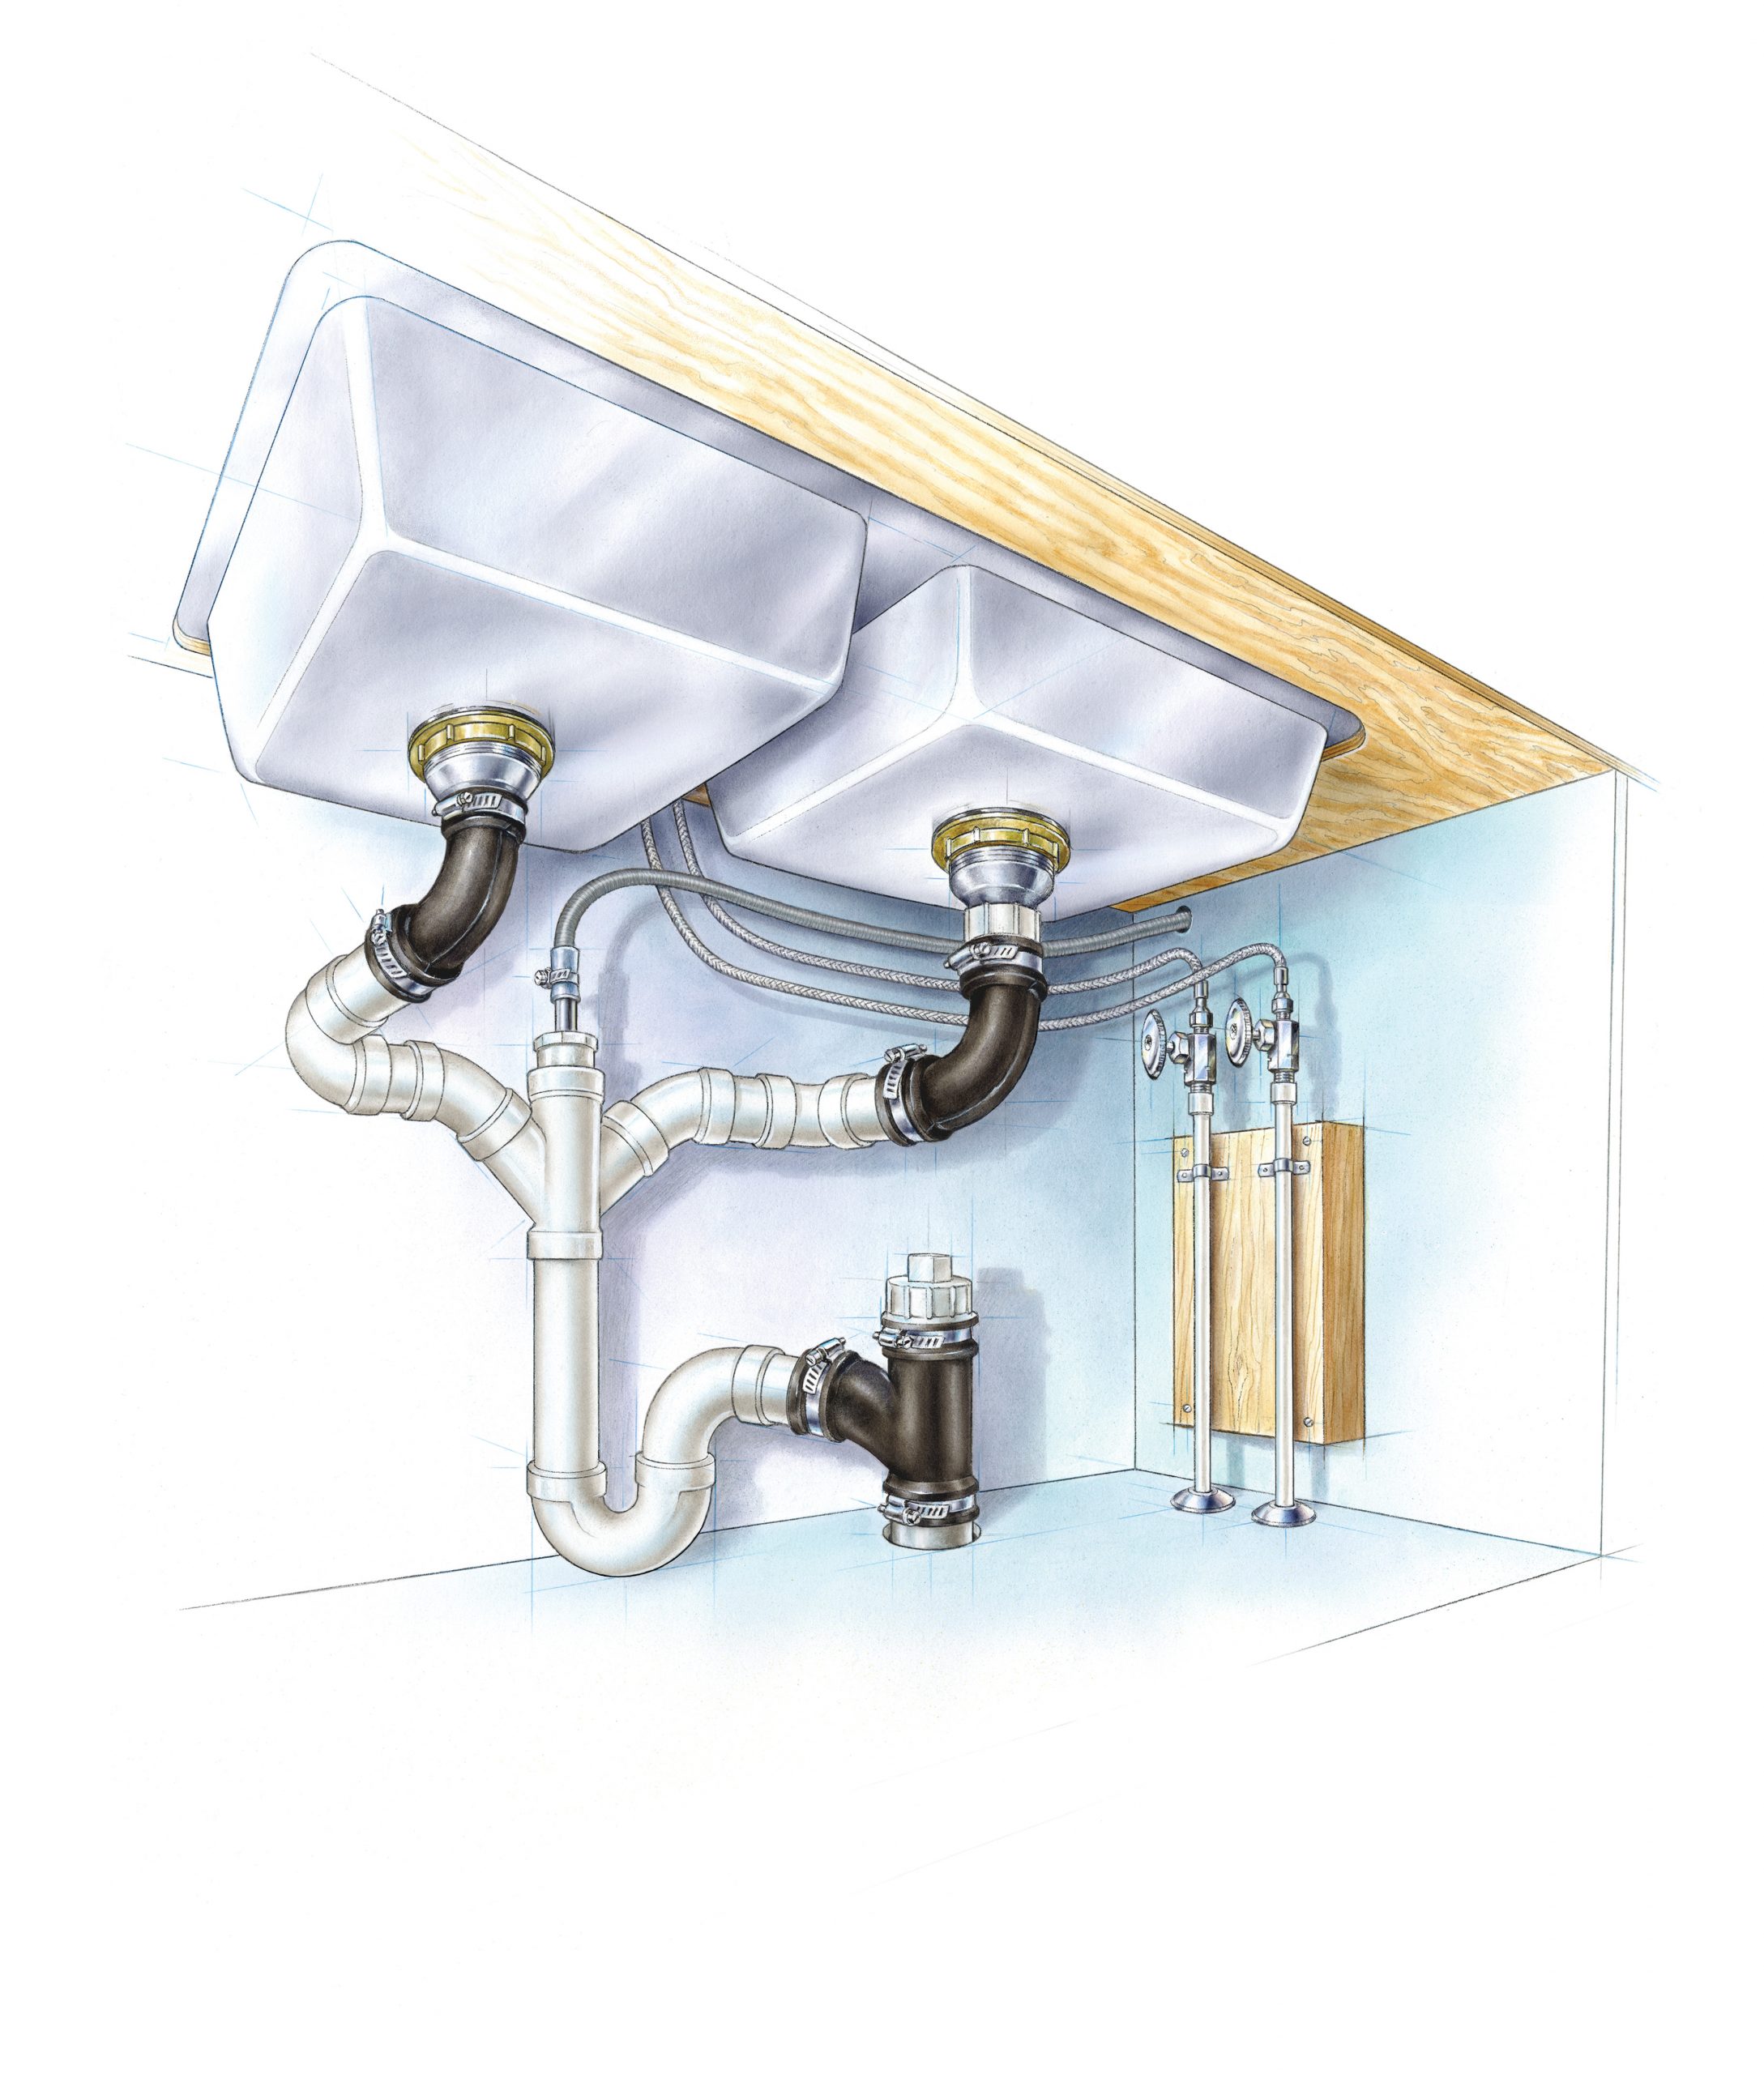 Better Undersink Plumbing - Fine Homebuilding